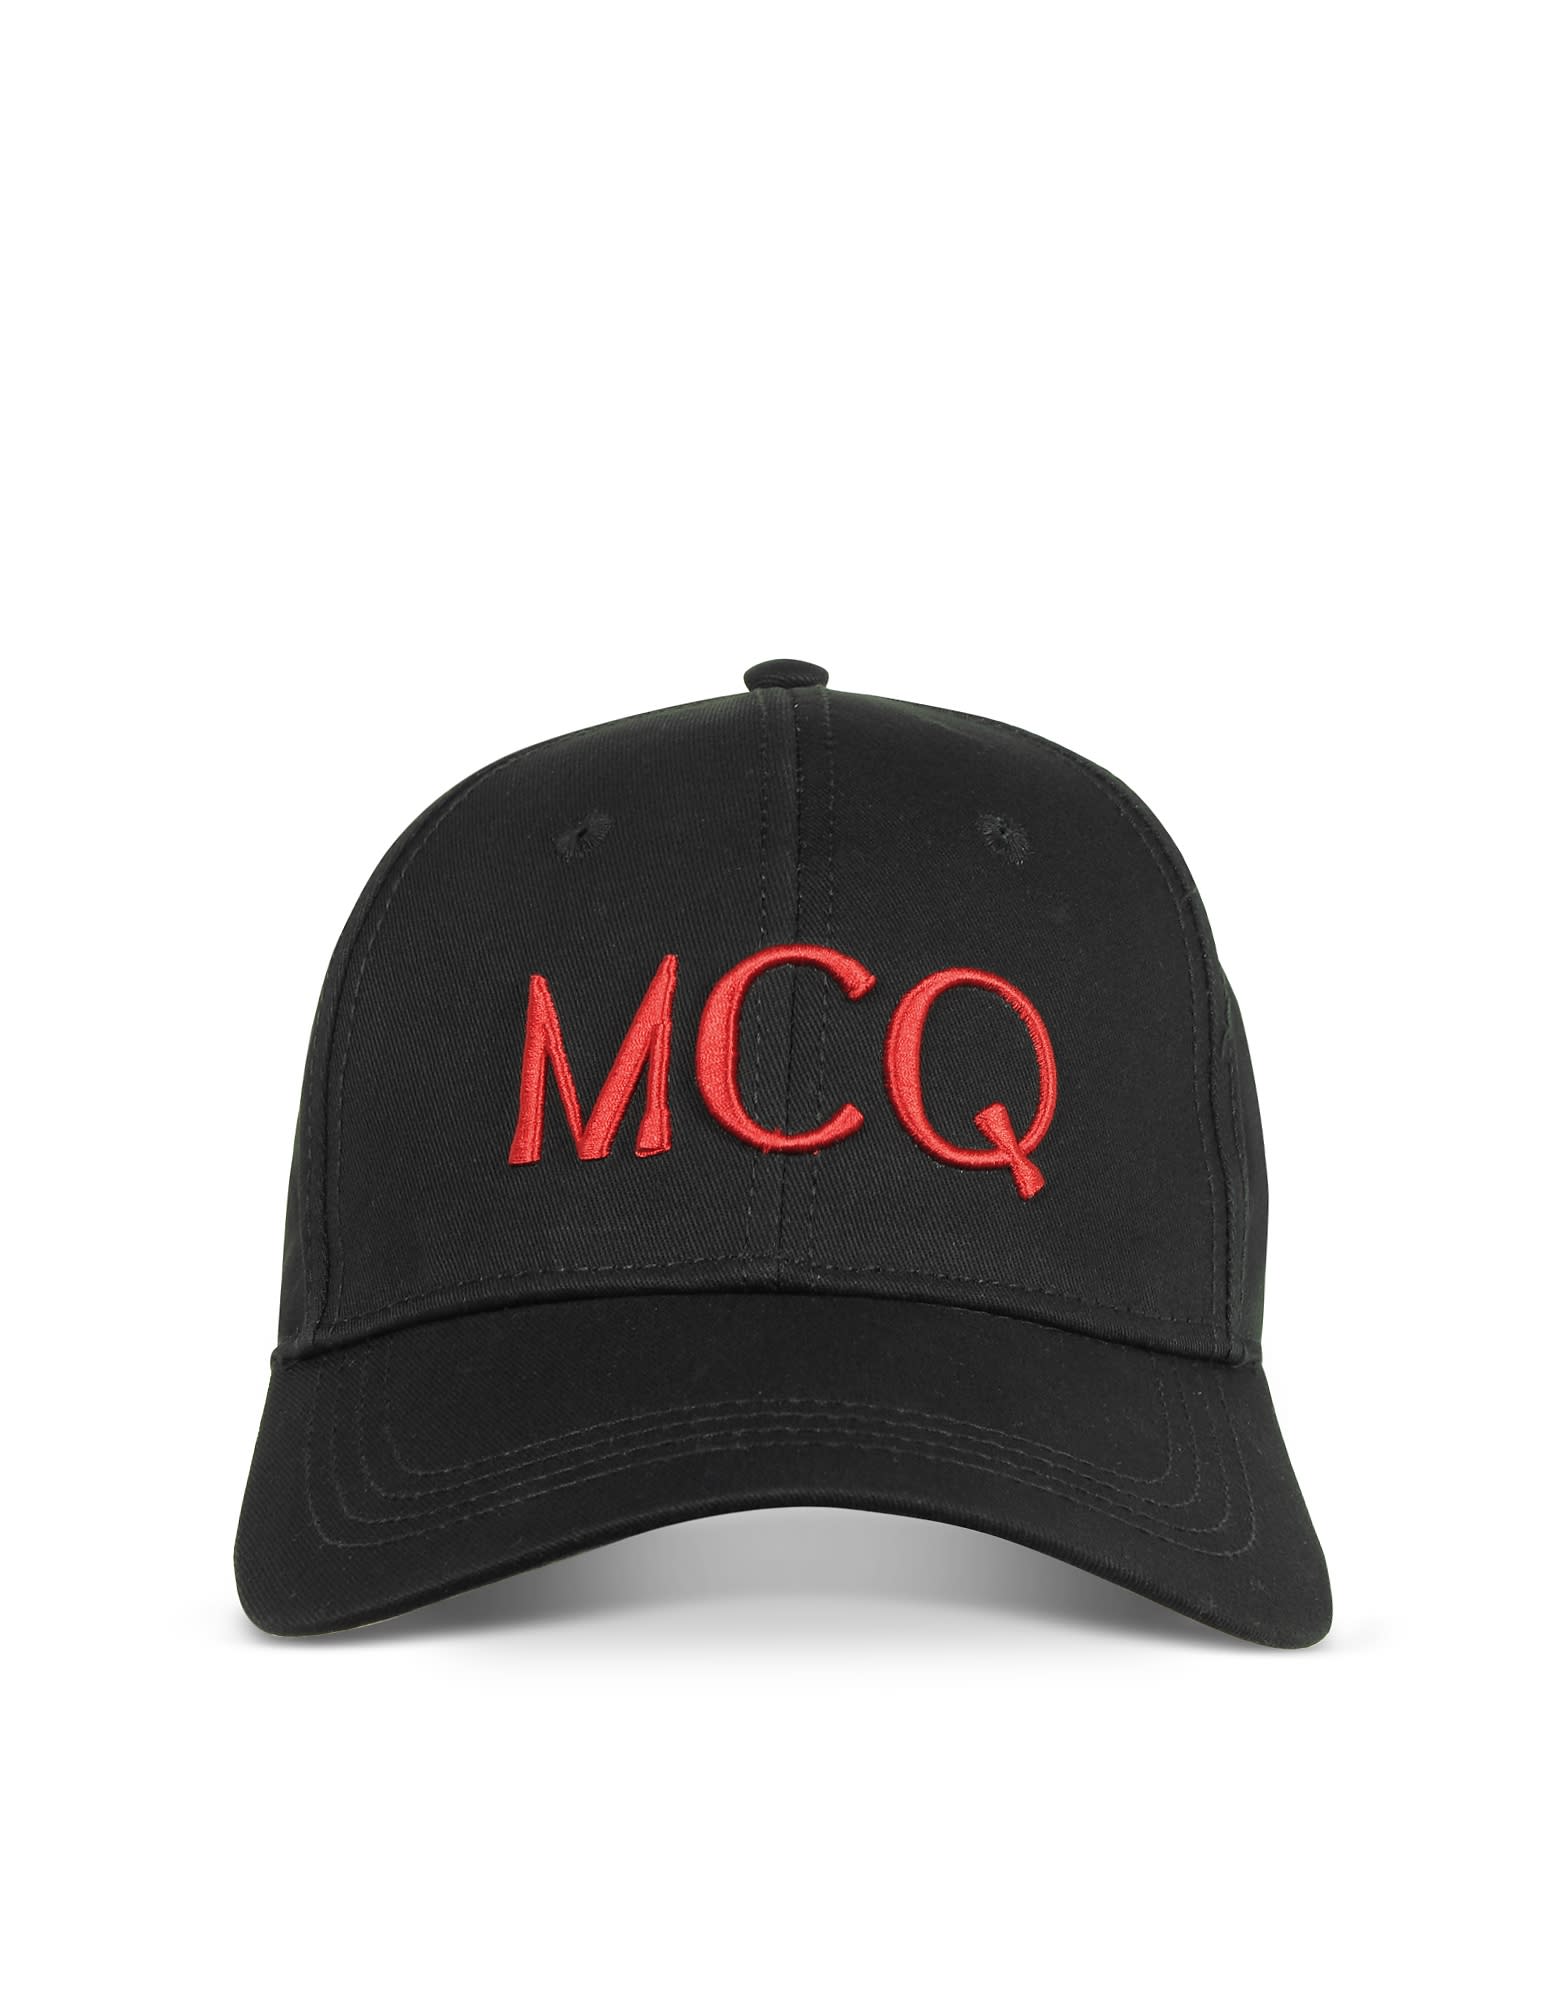 MCQ BY ALEXANDER MCQUEEN MCQ ALEXANDER MCQUEEN BLACK COTTON LOGO BASEBALL CAP,11219973